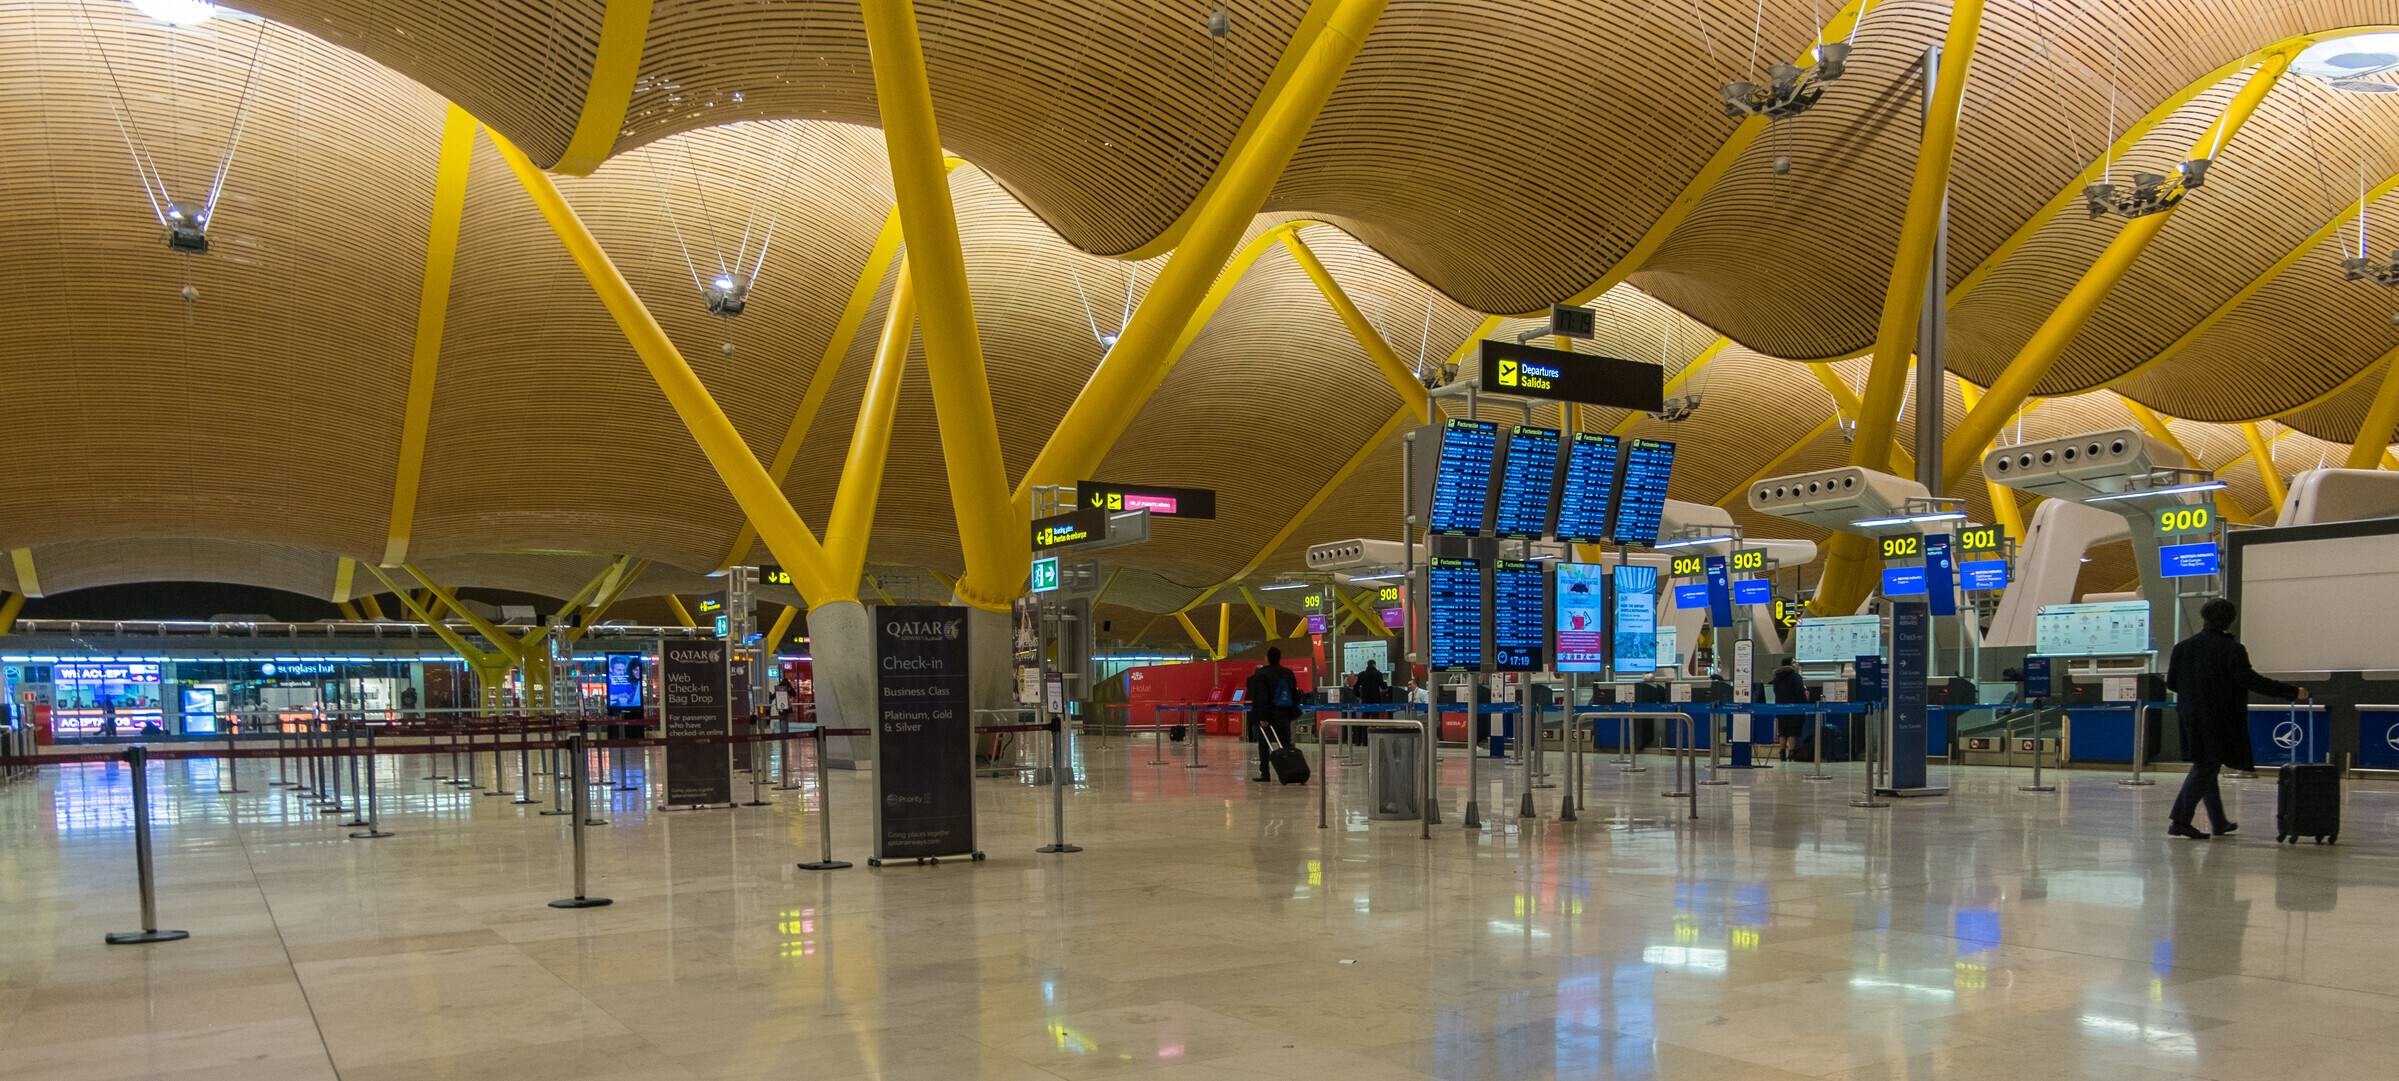 Аэропорта Мадрида: официальный сайт, схема терминалов